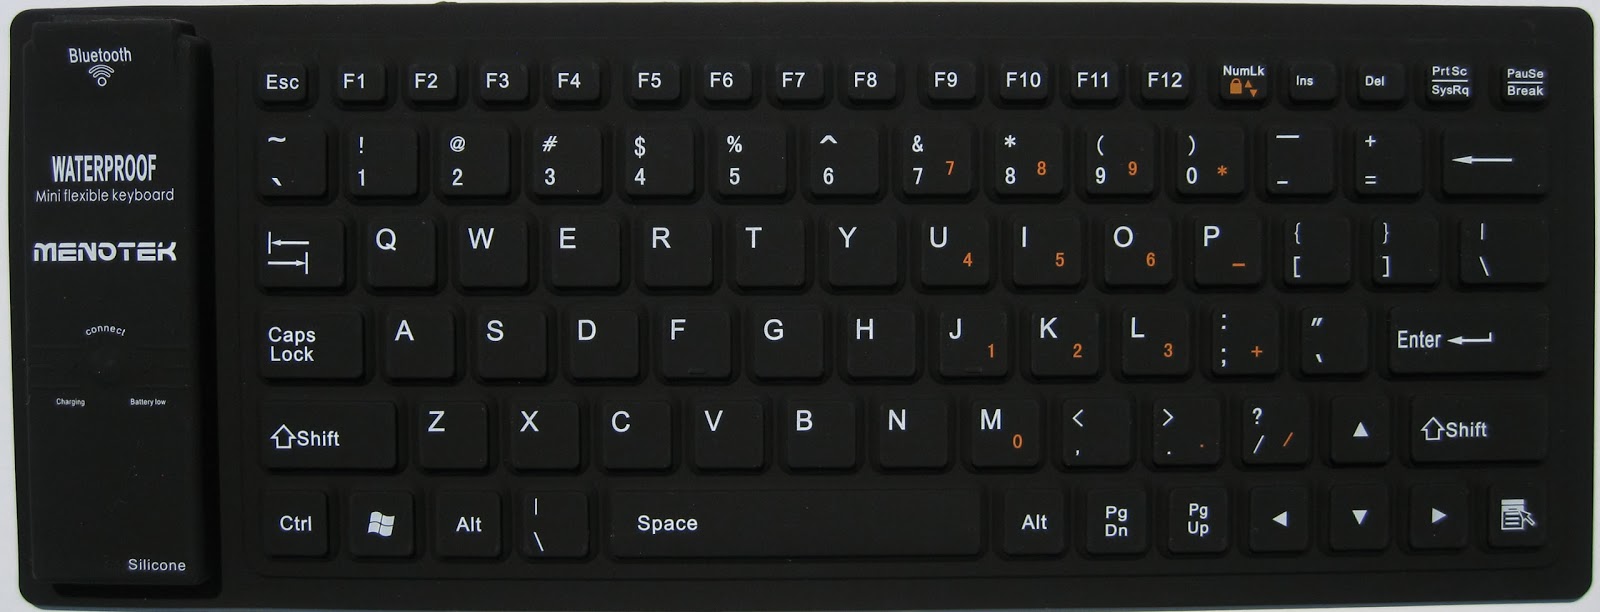 Ini fungsi tombol F1 hingga F12 pada keyboard yang kerap diabaikan